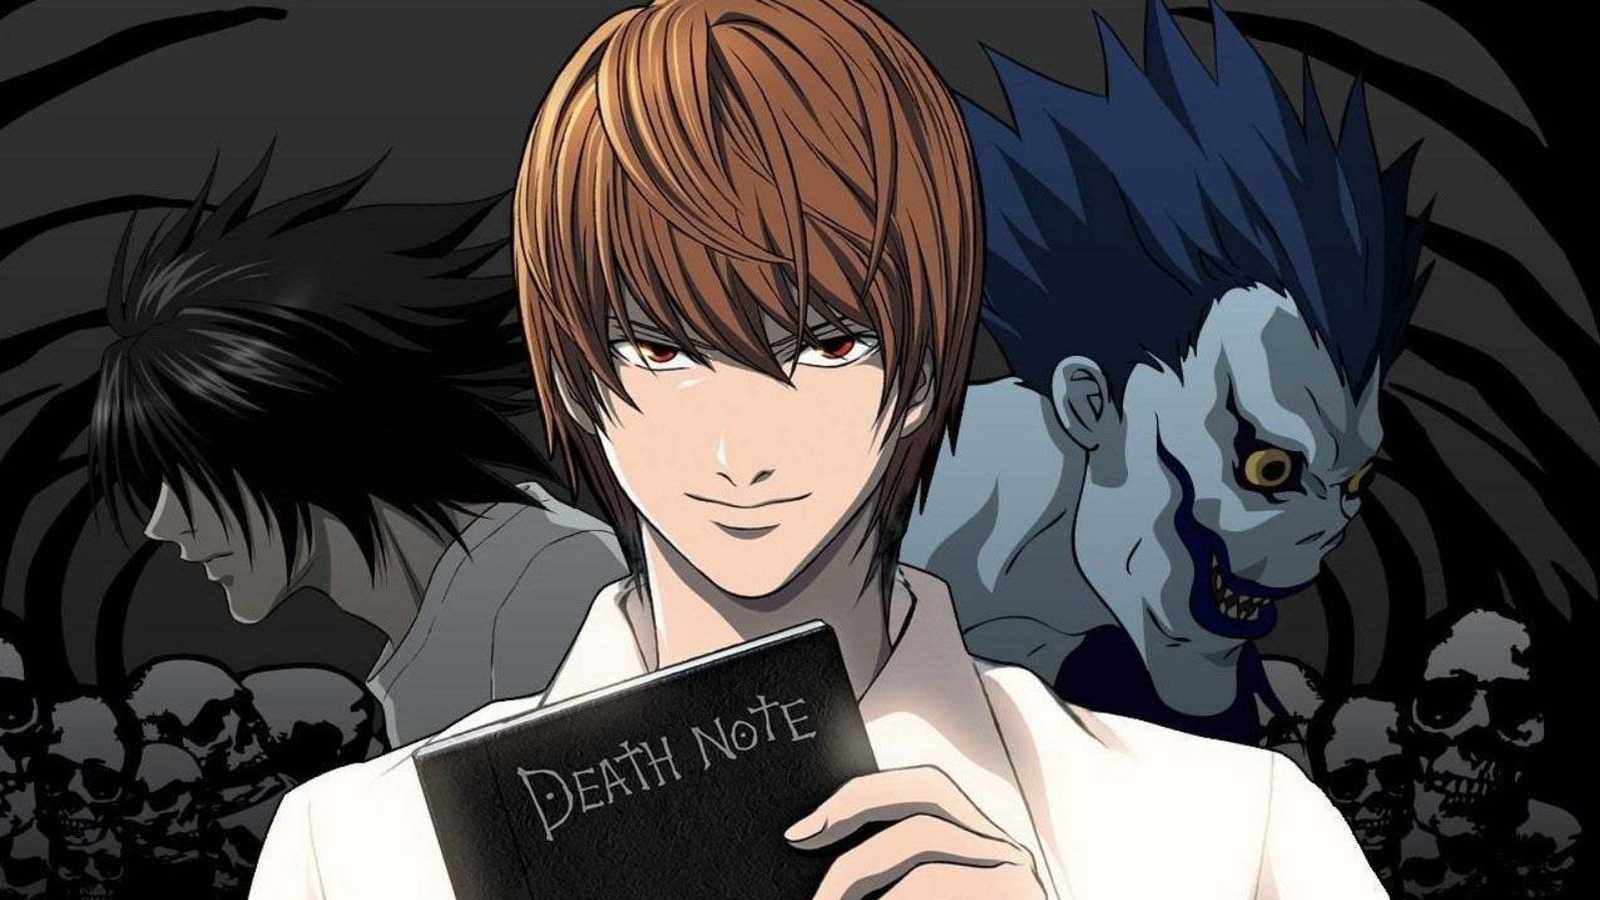 Manga Death Note, i fratelli Duffer al lavoro sulla nuova serie anime in live action